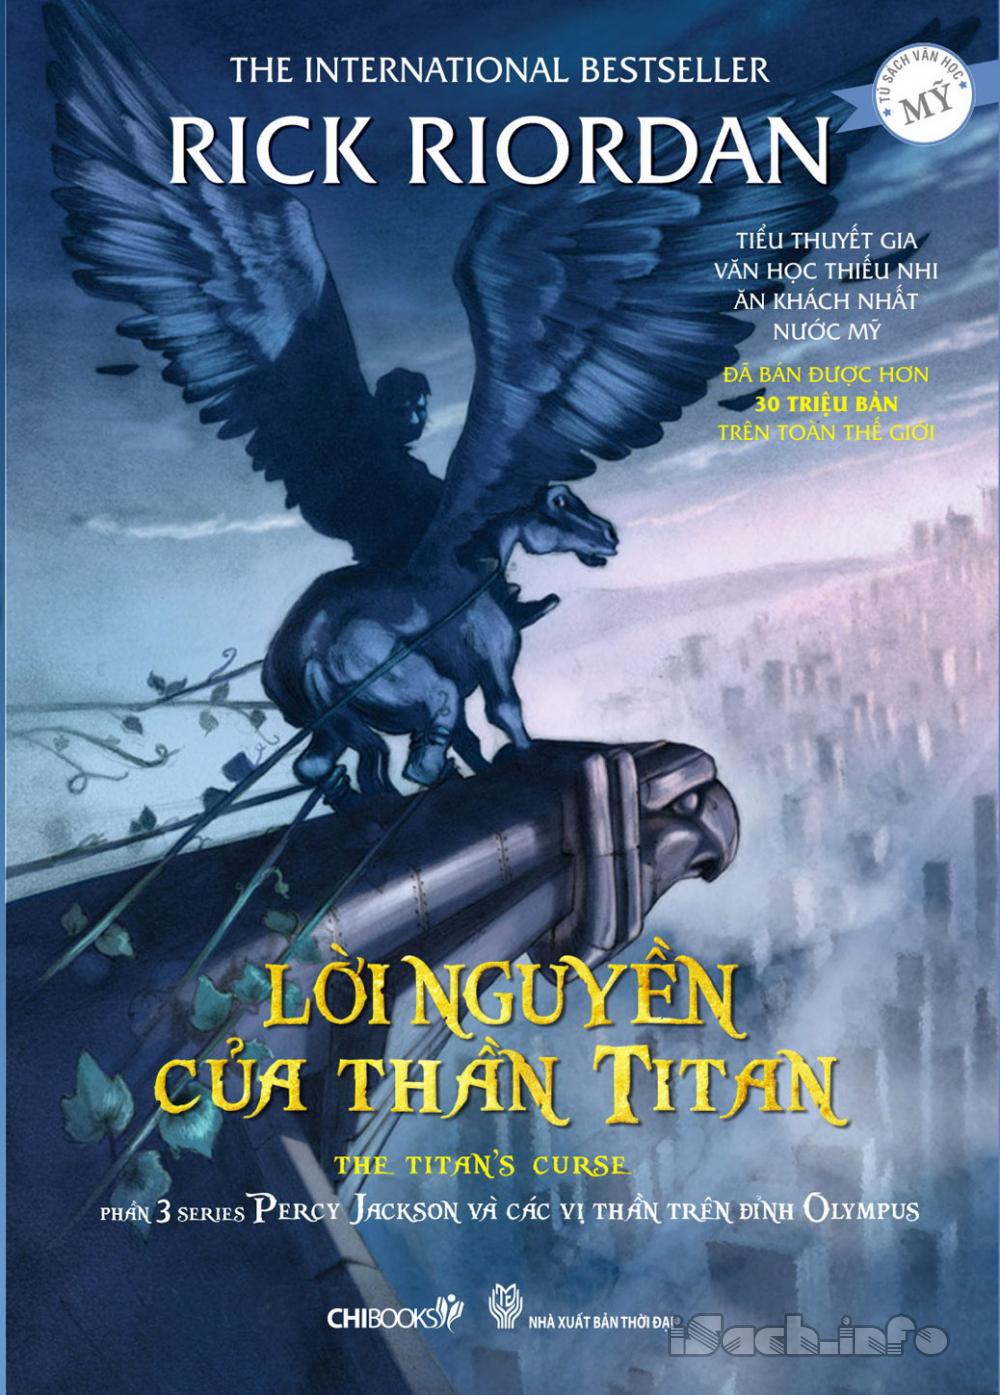 Percy Jackson III: Lời Nguyền Của Thần Titan